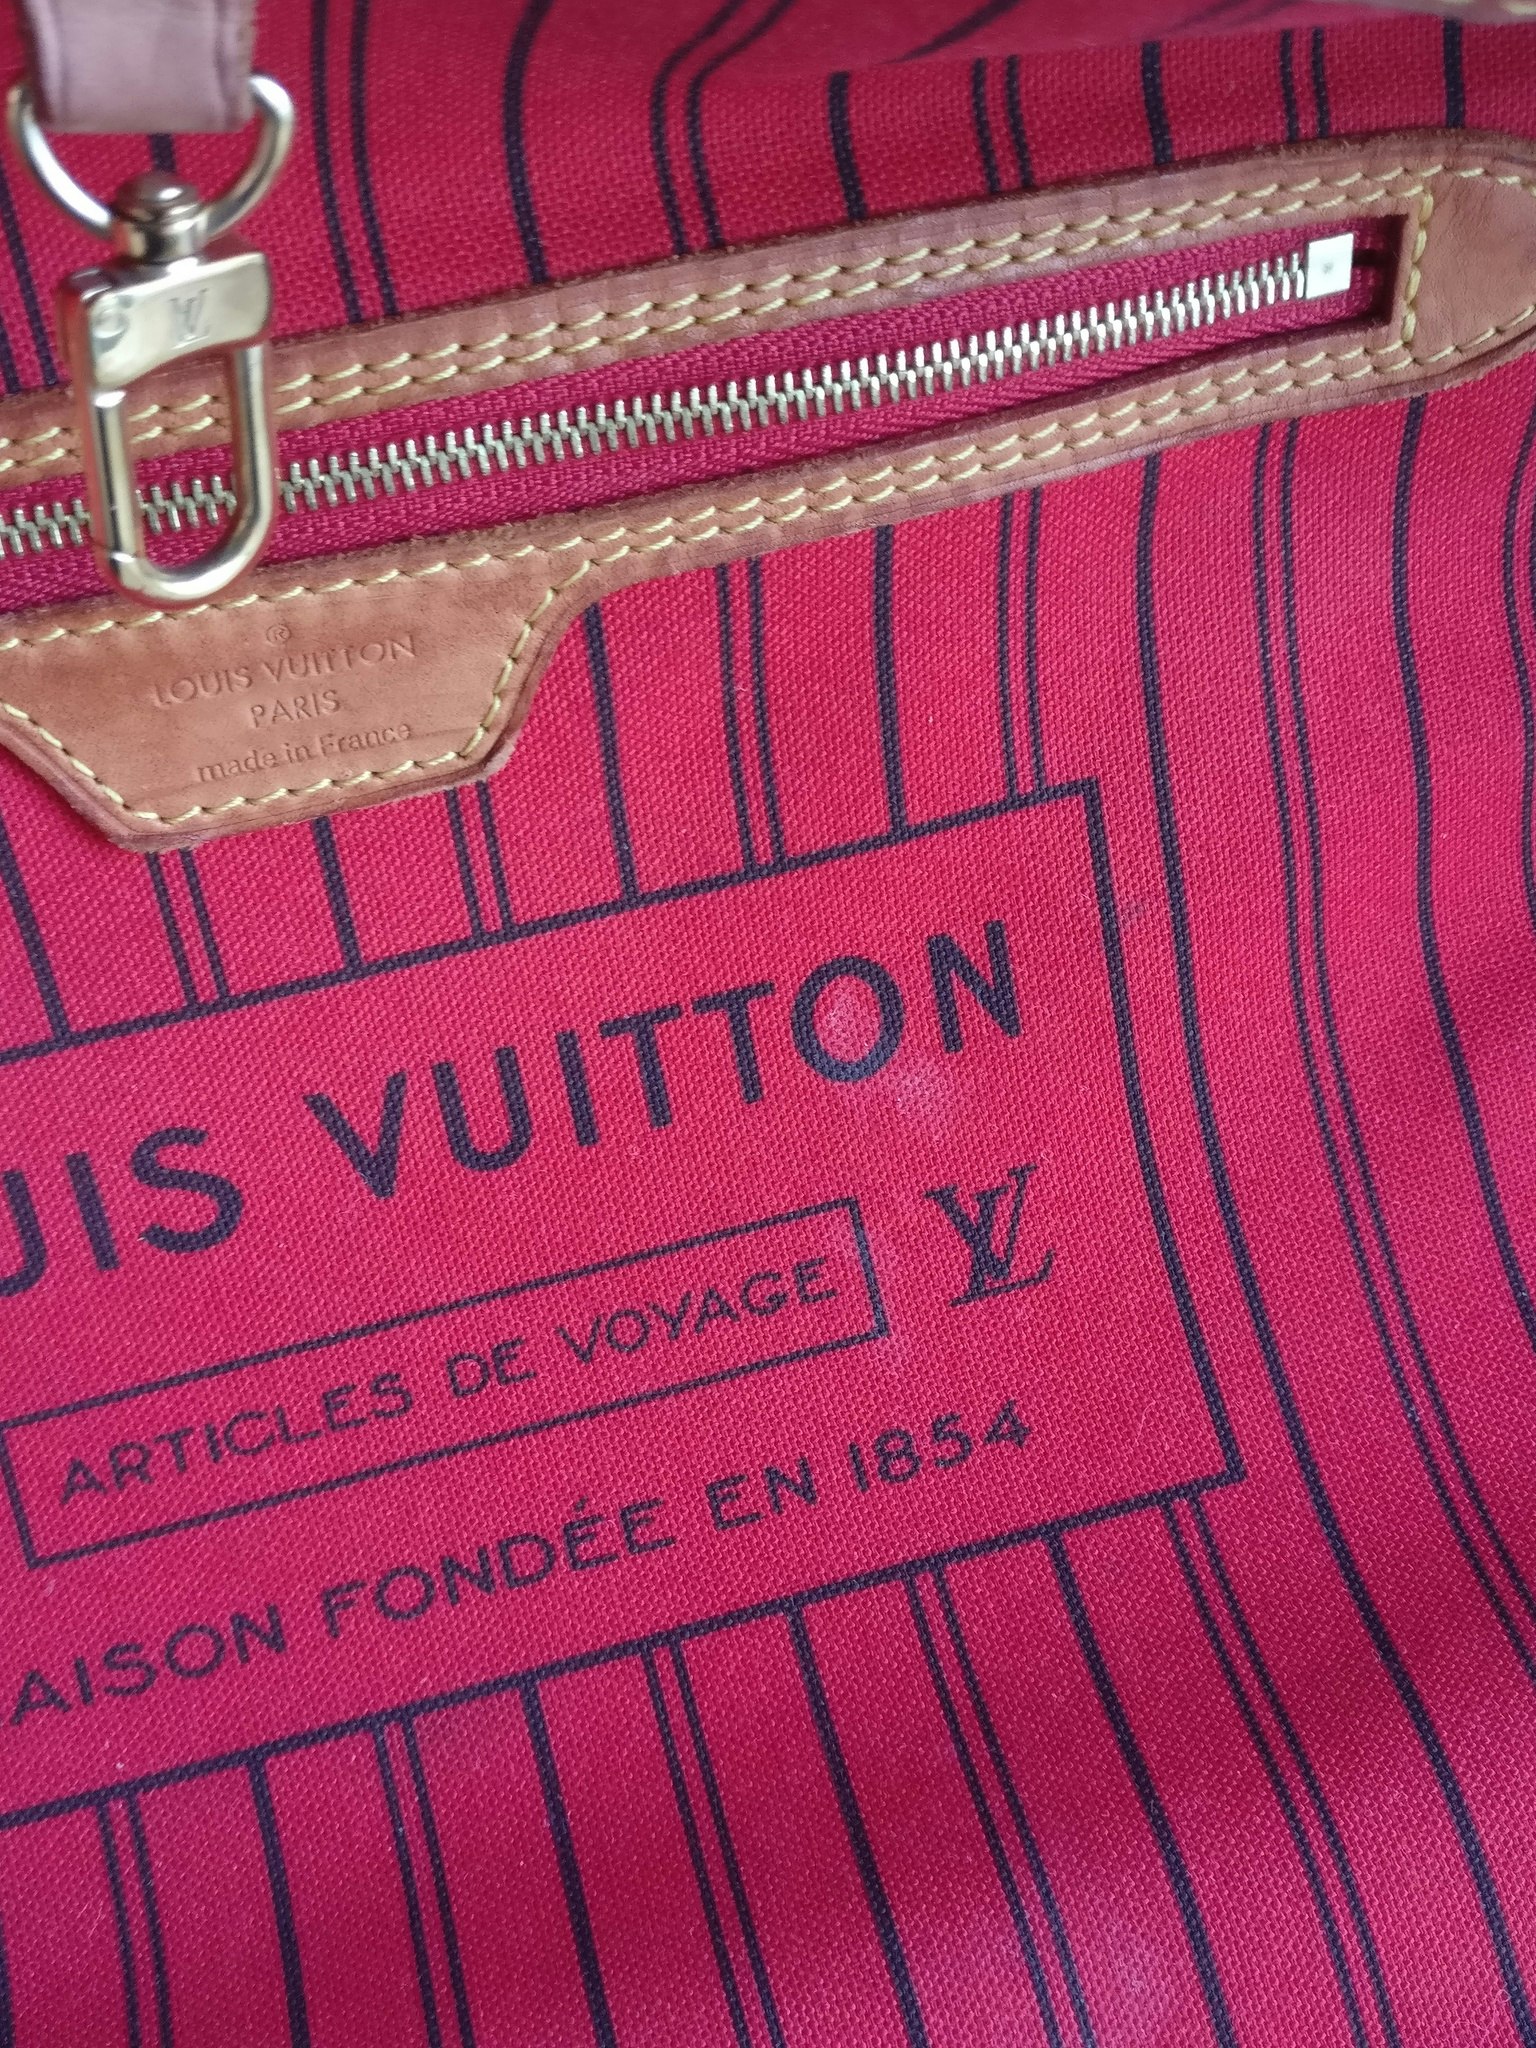 Louis Vuitton Neverfull MM